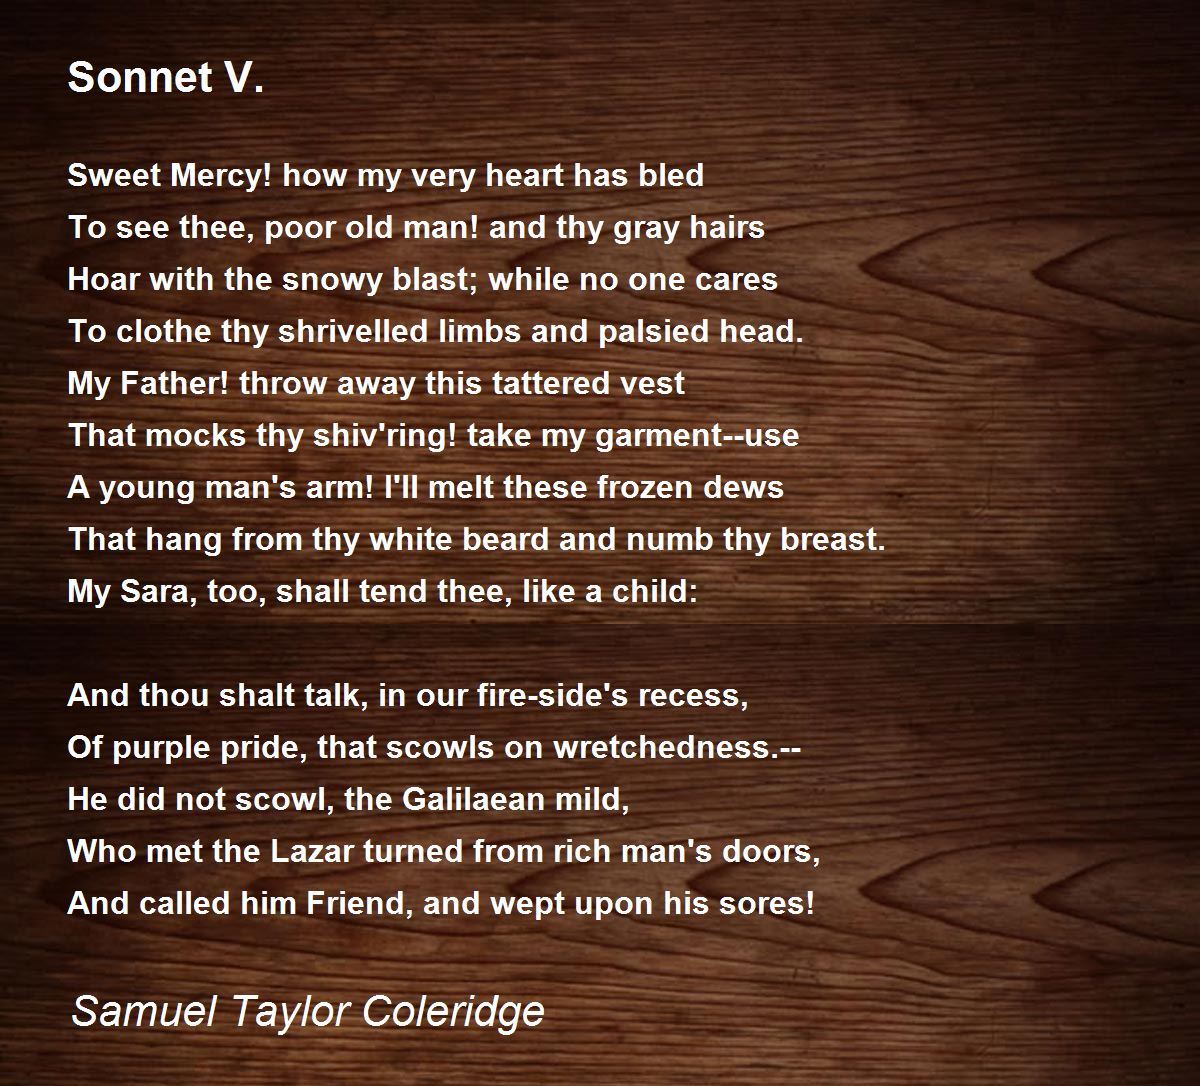 Sonnet V. Poem by Samuel Taylor Coleridge - Poem Hunter